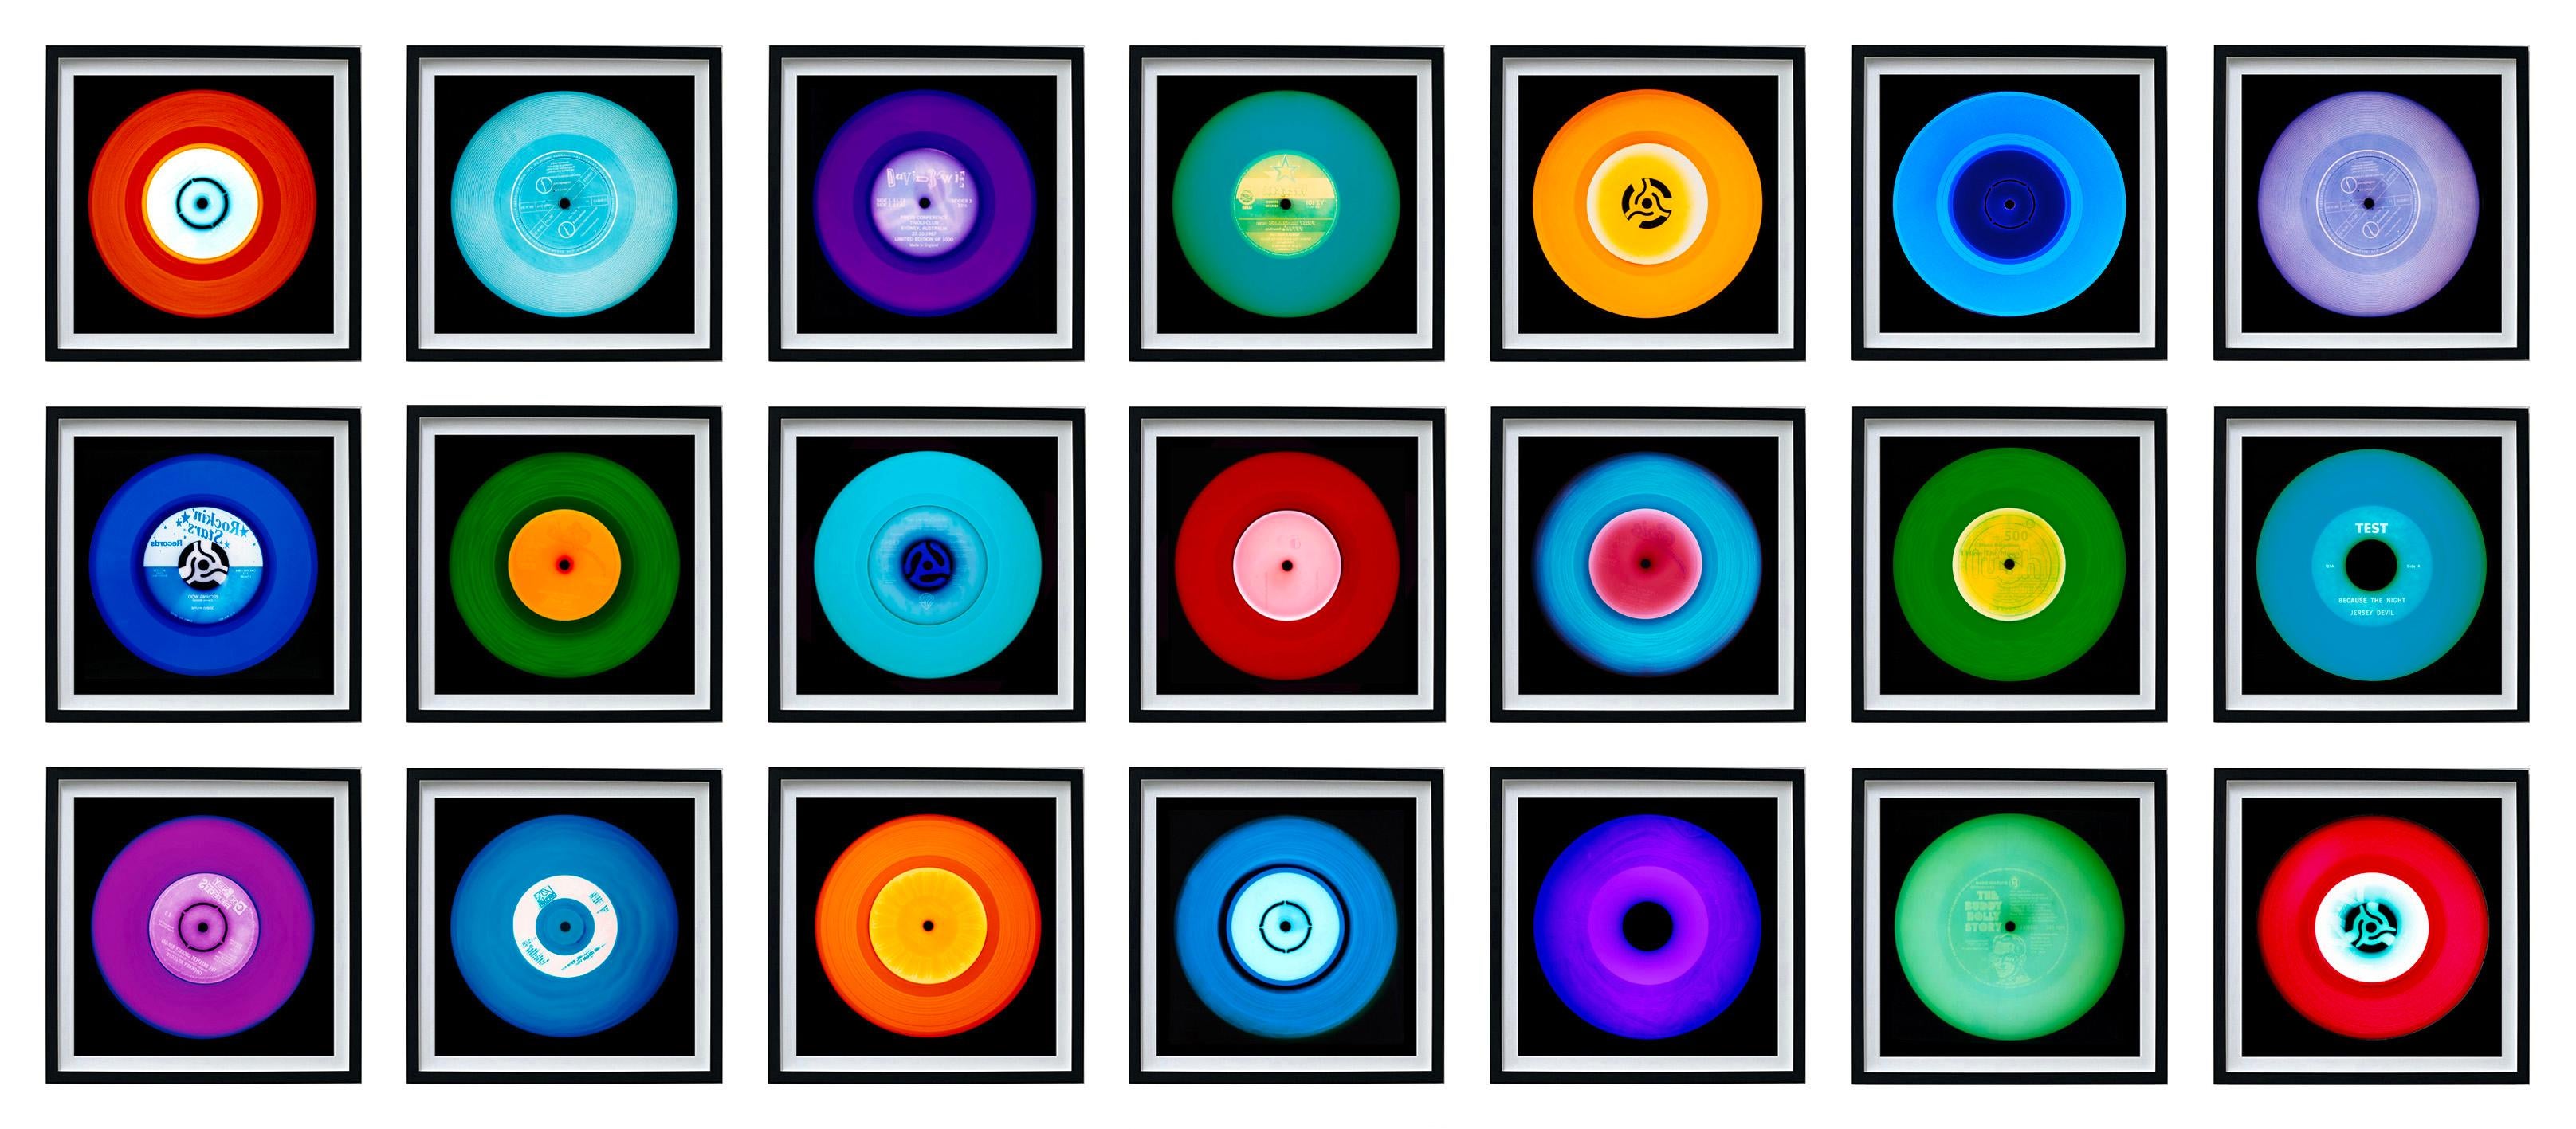 Heidler & Heeps Vinyl Collection Twenty-One Piece Multi-Color Installation.
Die renommierten zeitgenössischen Fotografen Richard Heeps und Natasha Heidler haben für diese wunderschöne, faszinierende Kollektion zusammengearbeitet. Ein Fest der